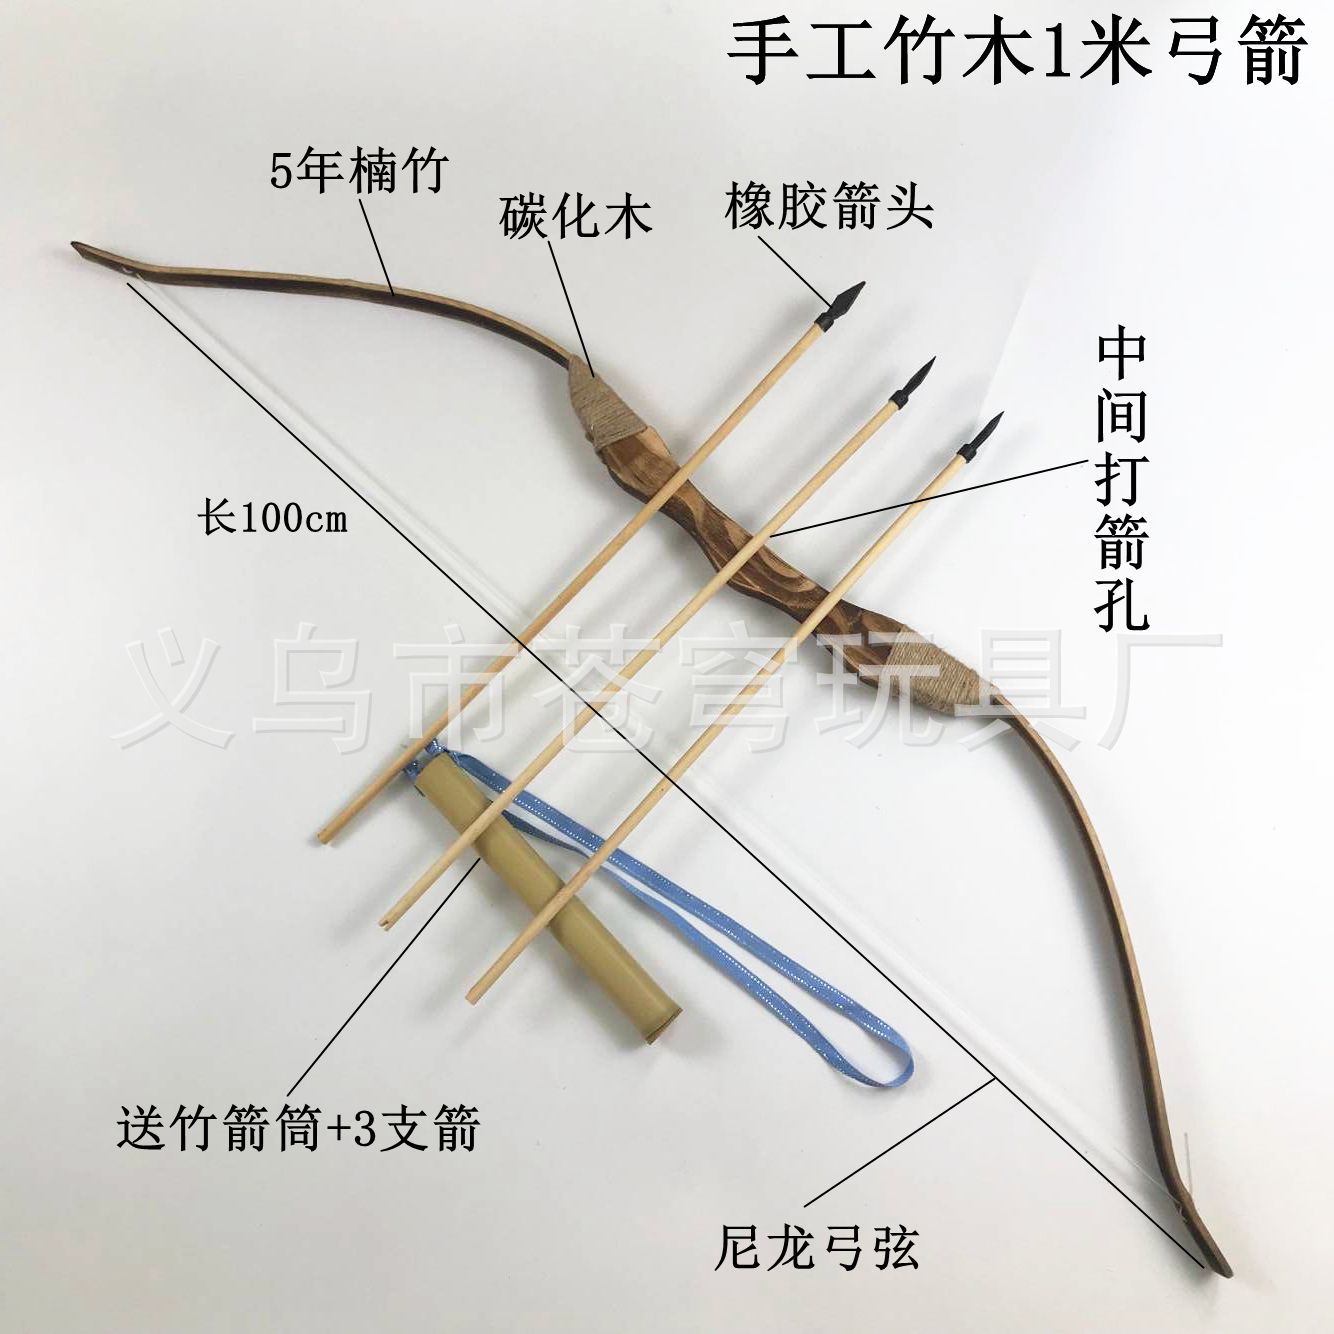 用竹子制作反曲弓图片